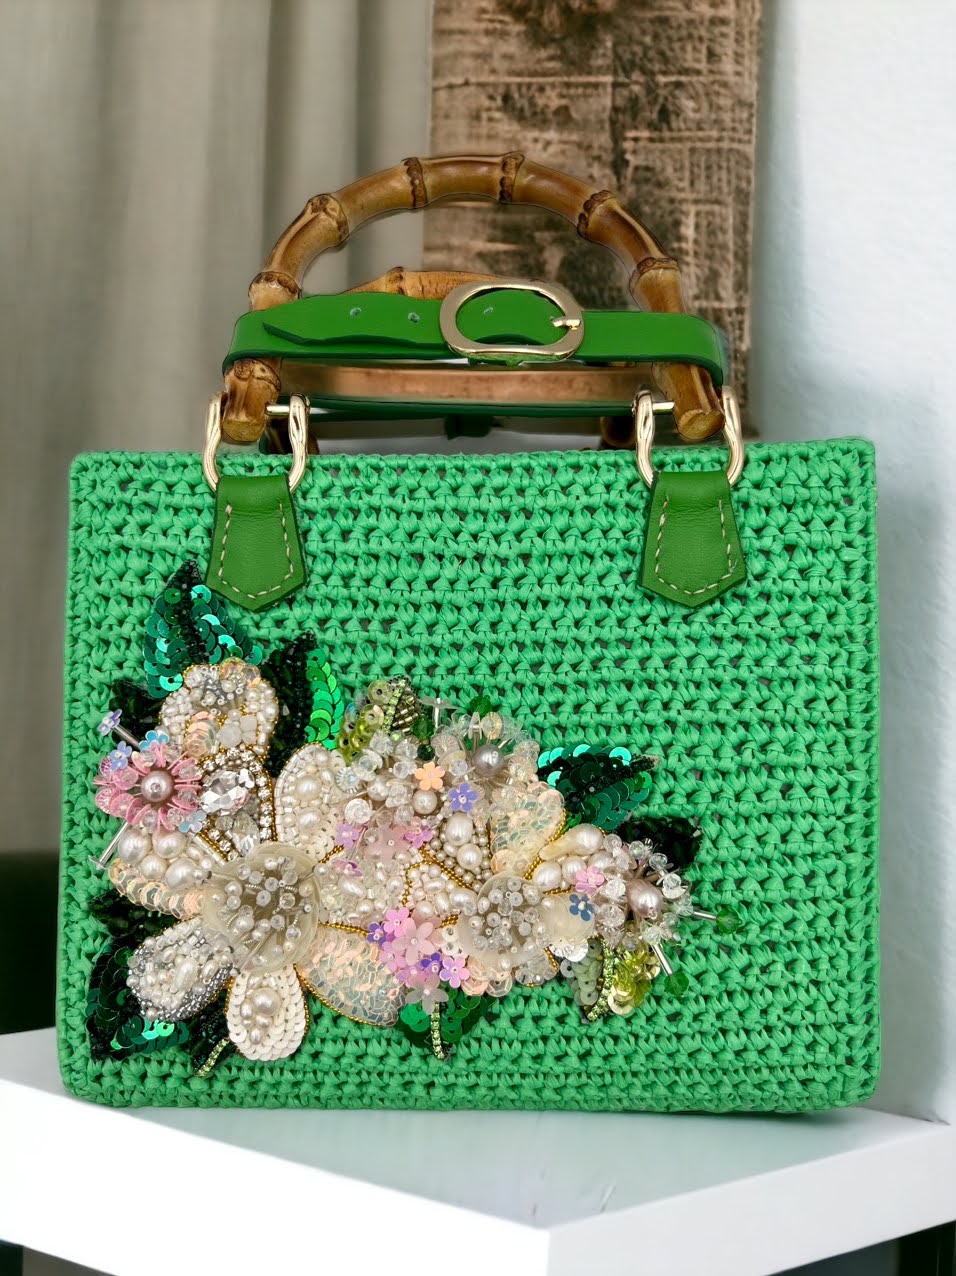 Customize Crochet Bag - Palm Leaf Natural Fiber Bag - Made to order